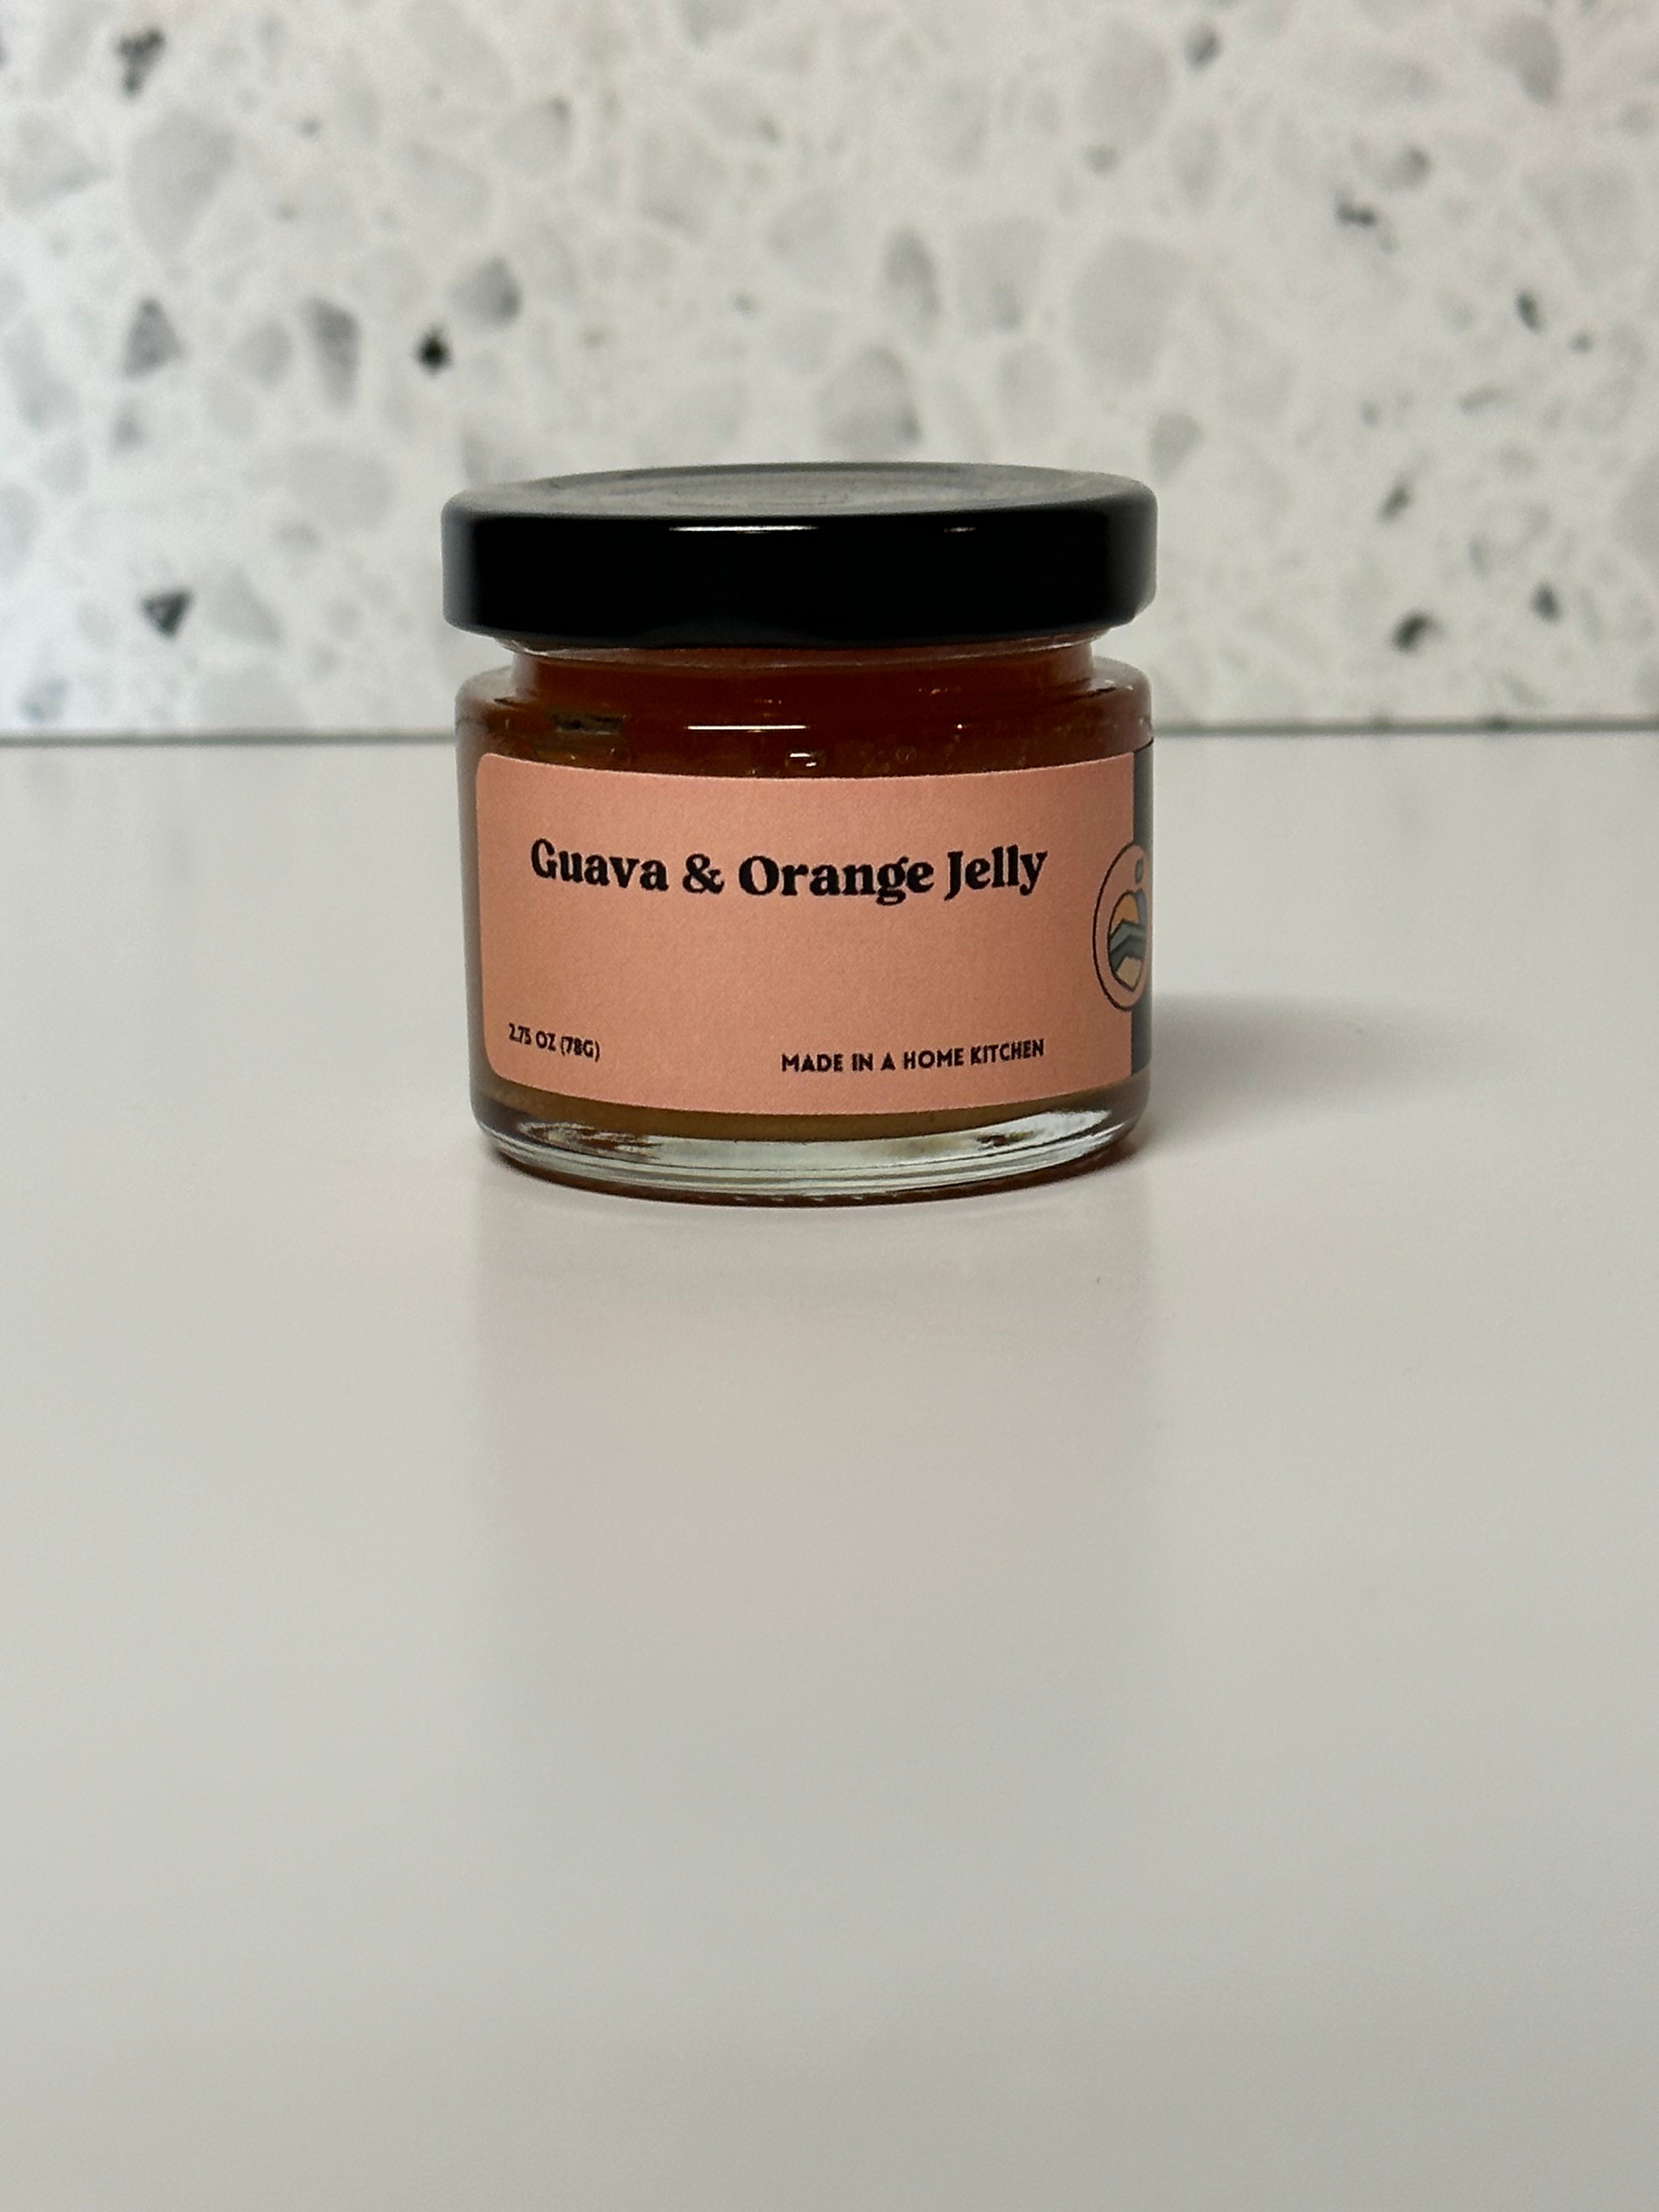 Guava & Orange Jelly